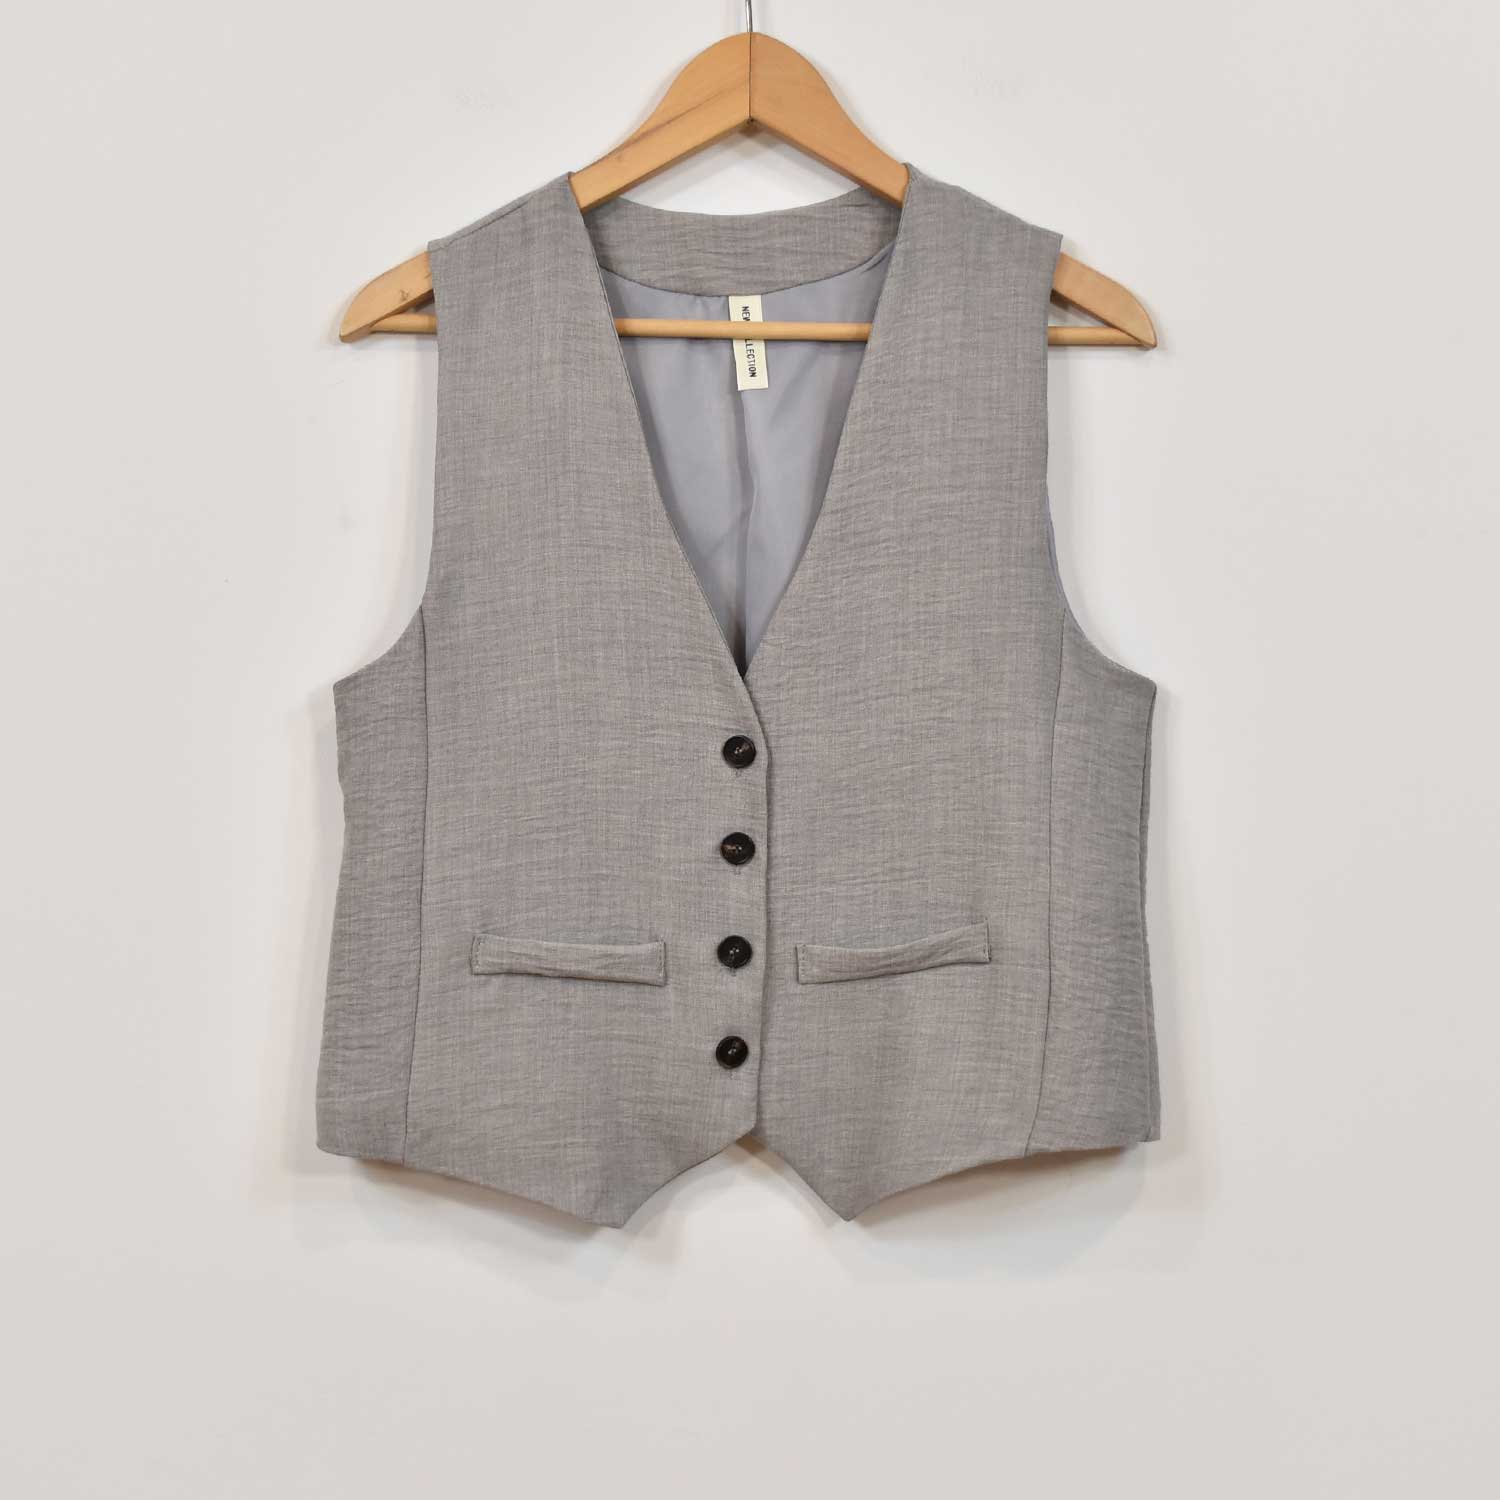 Grey plain vest